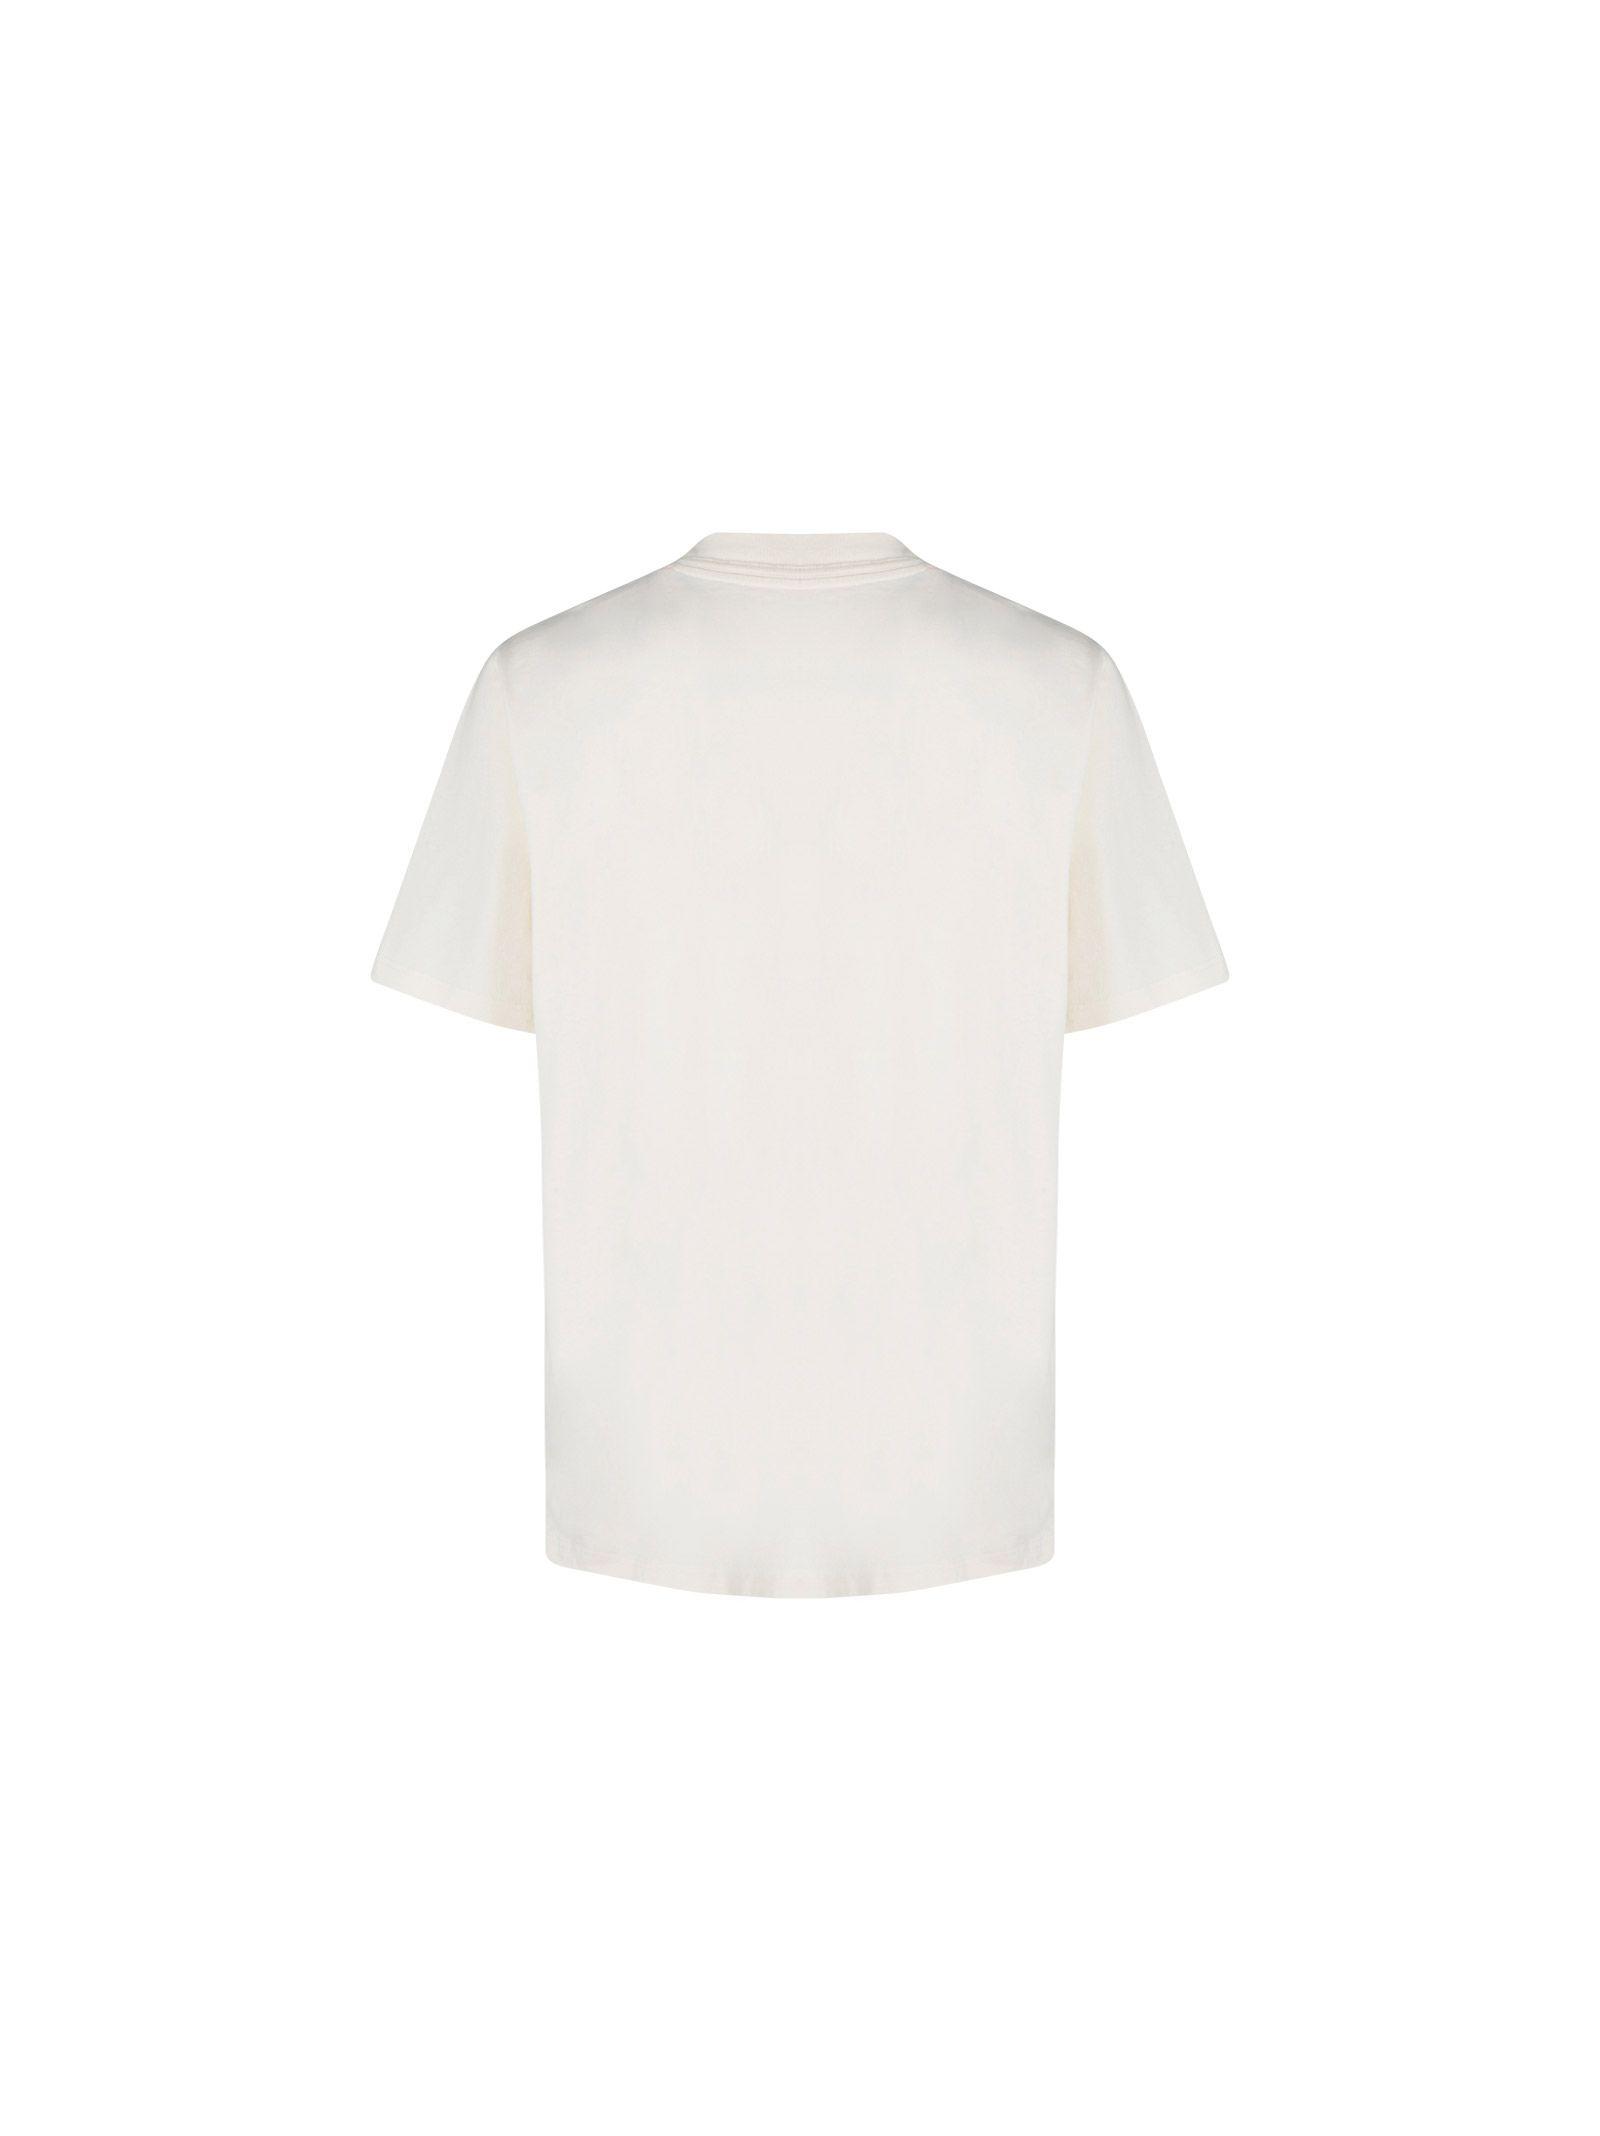 Heron Preston Cotton T-shirt in White/Orange (White) for Men 